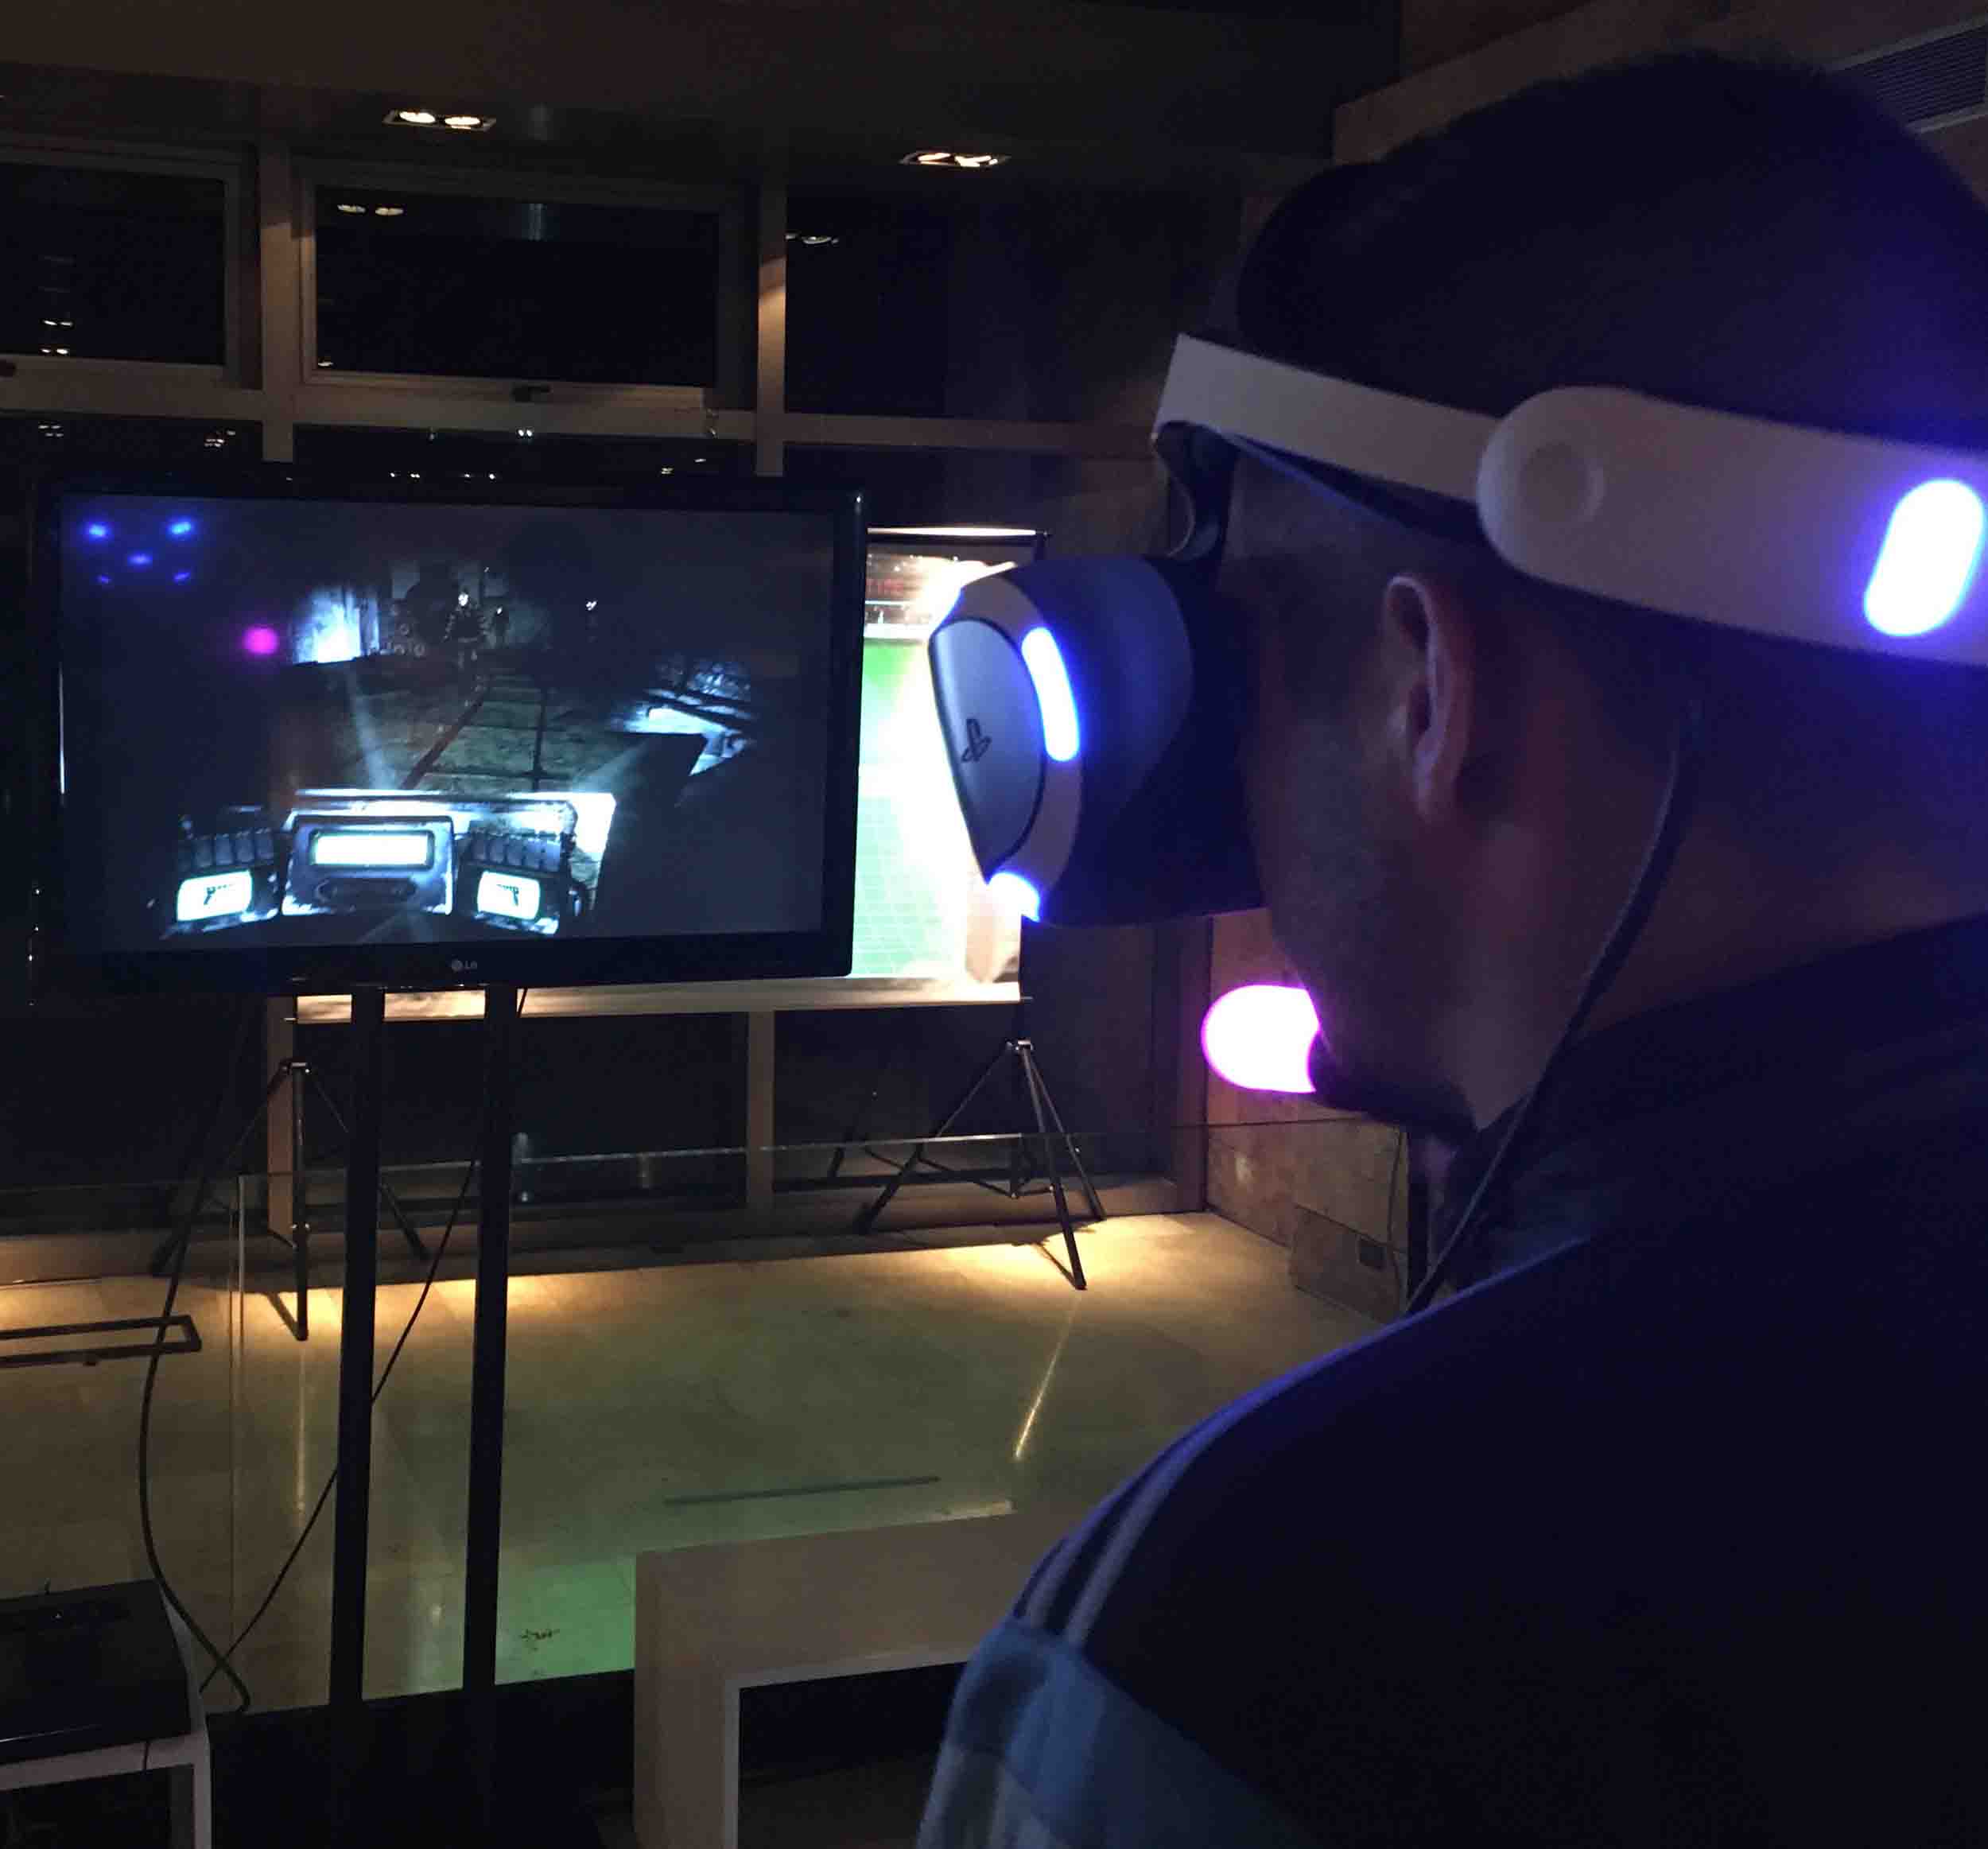 juegos de realidad virtual